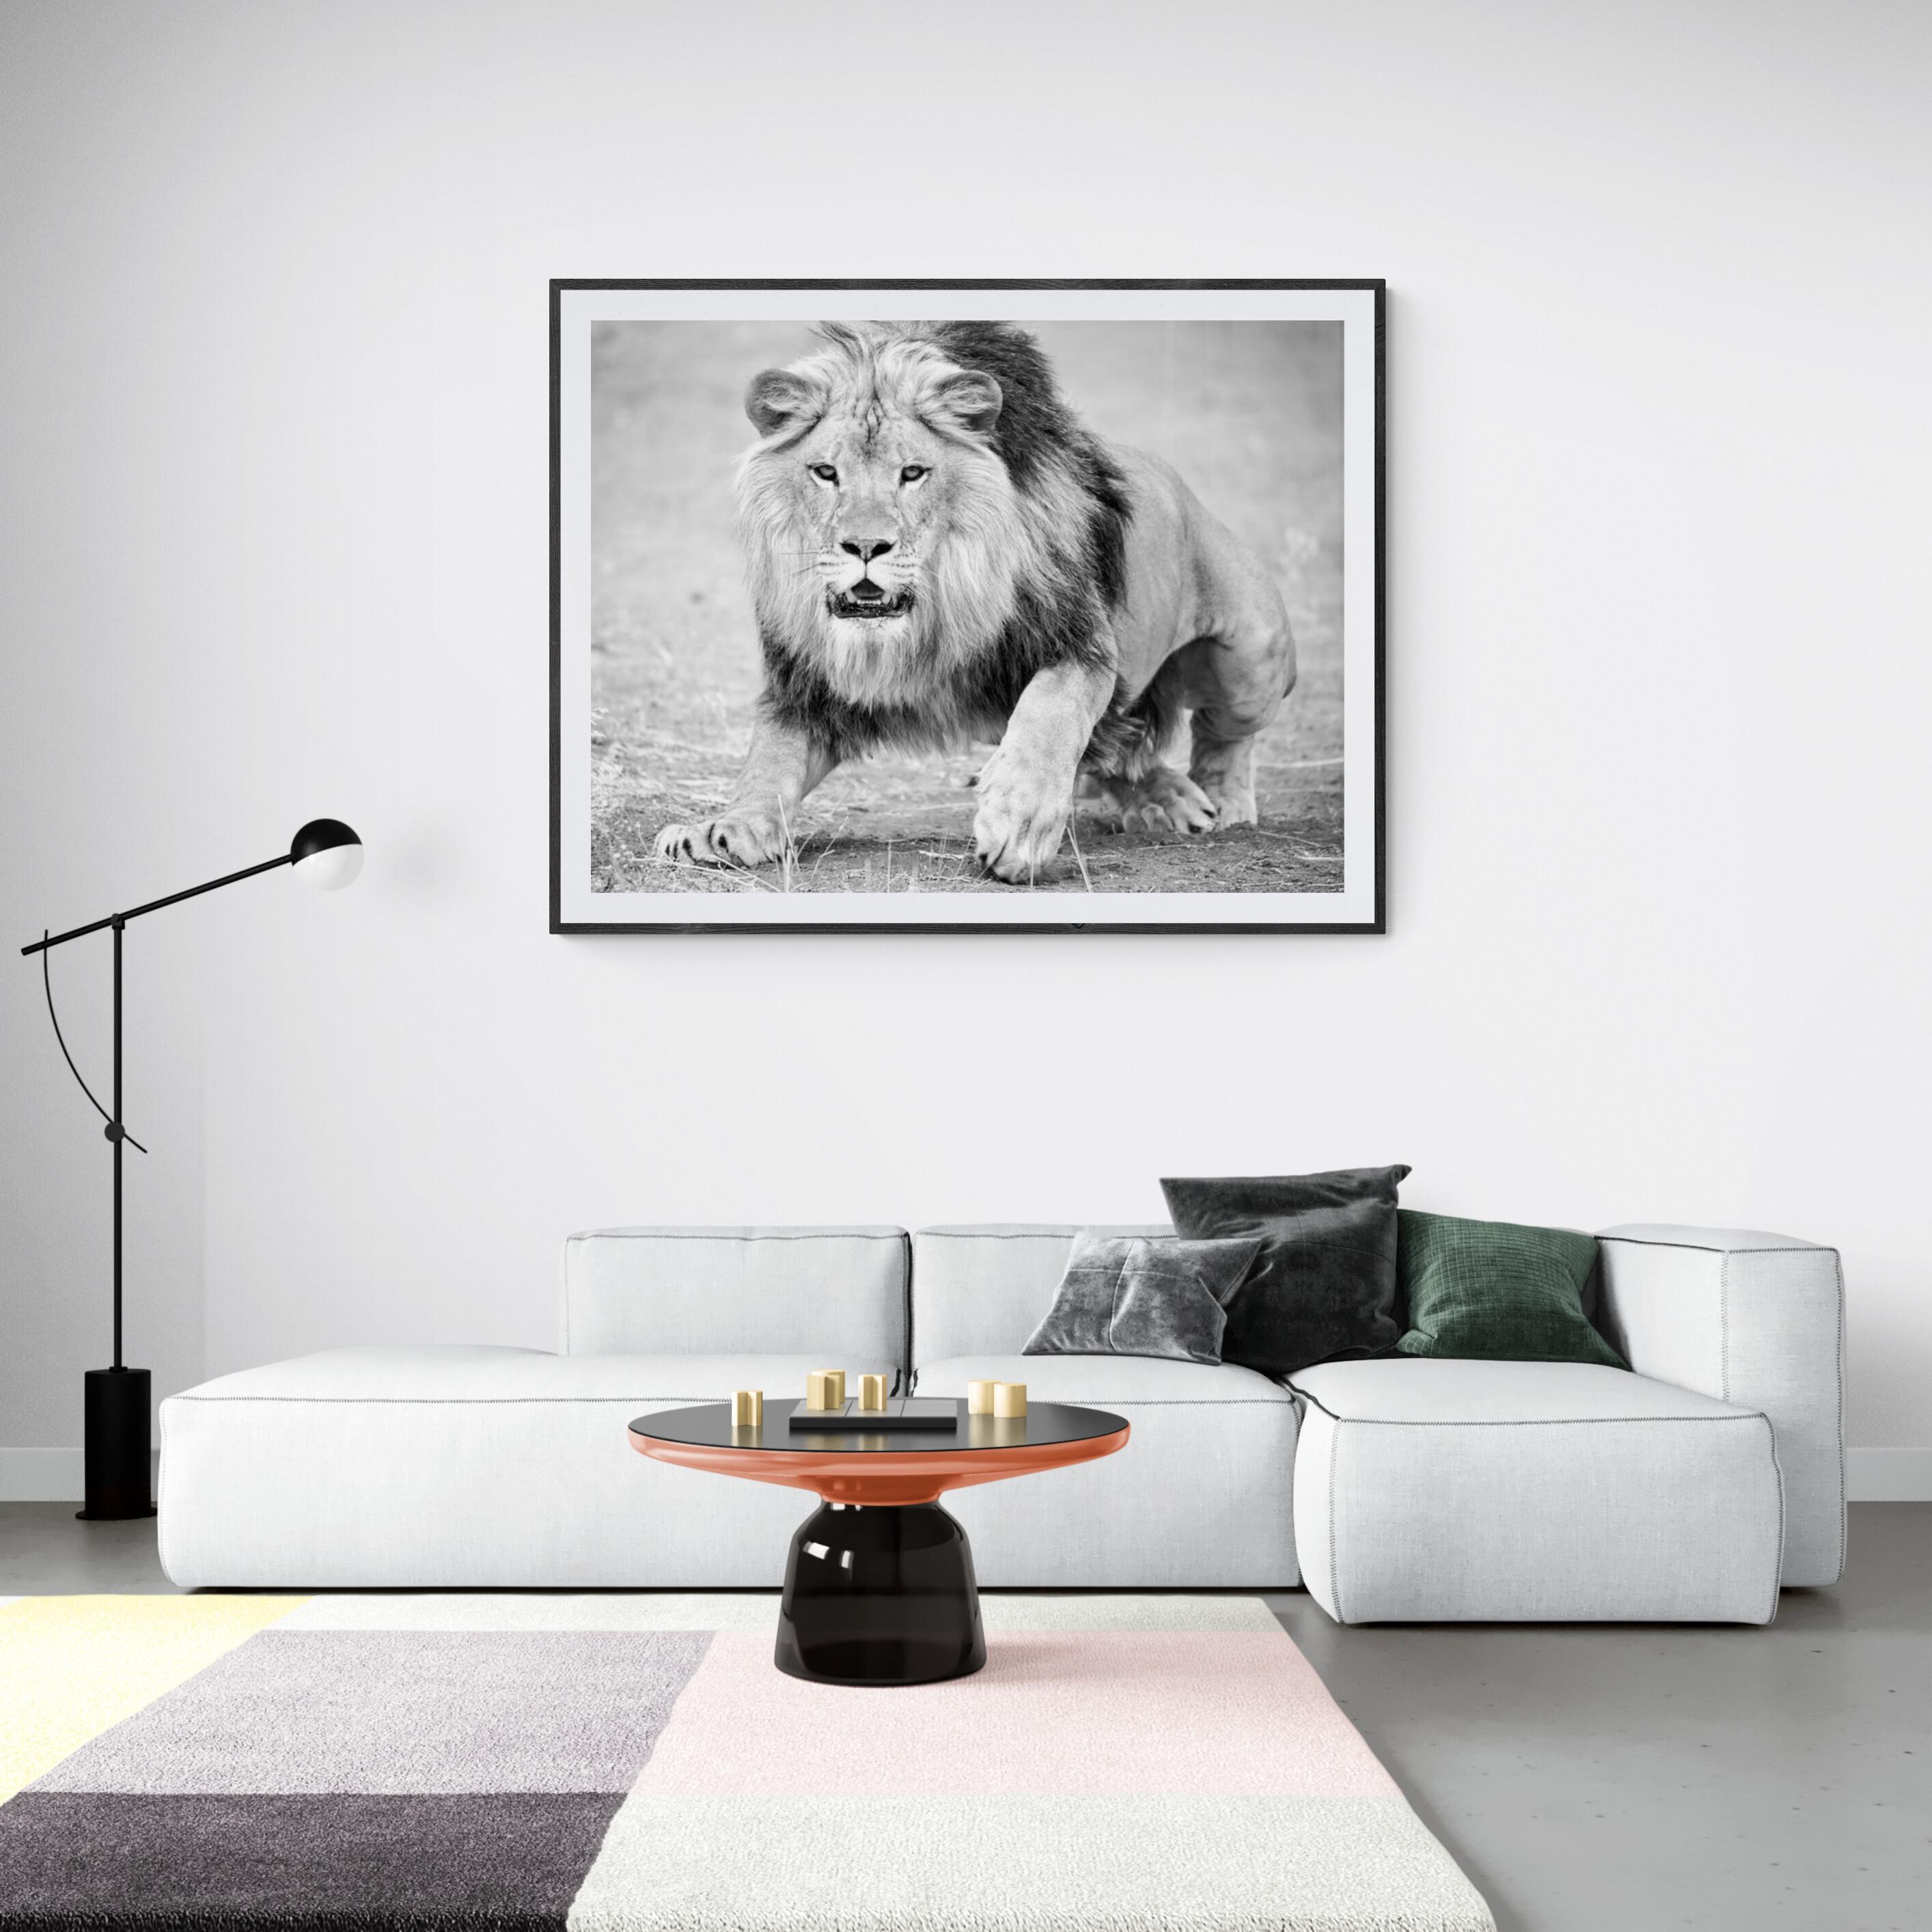 « The Charge » 36x48 - Photographie de lion en noir et blanc  - Print de Shane Russeck